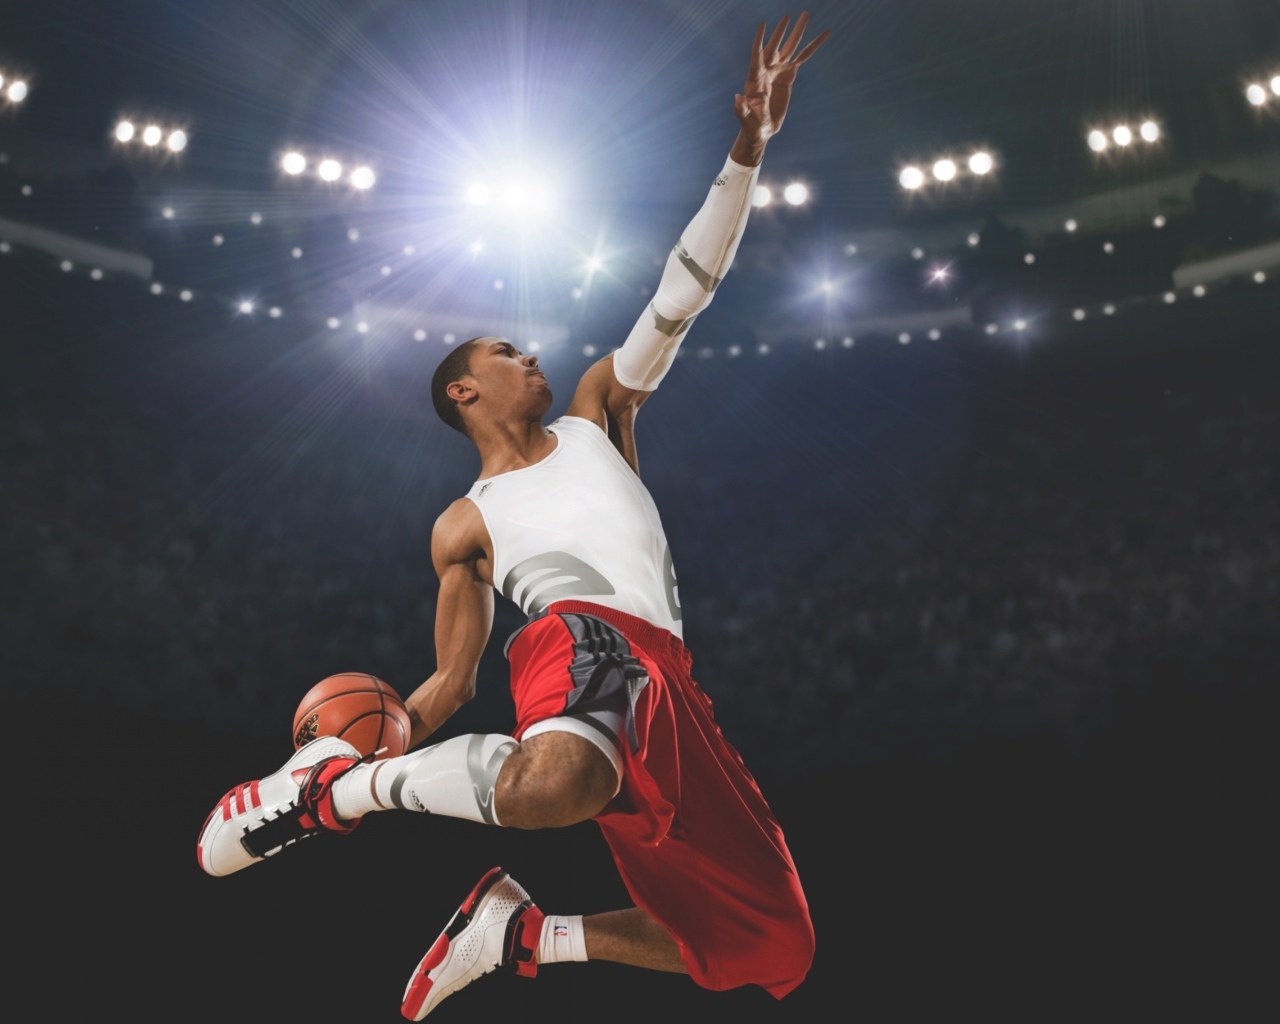 Прыжок с мячом баскетболиста Деррика Роуза 